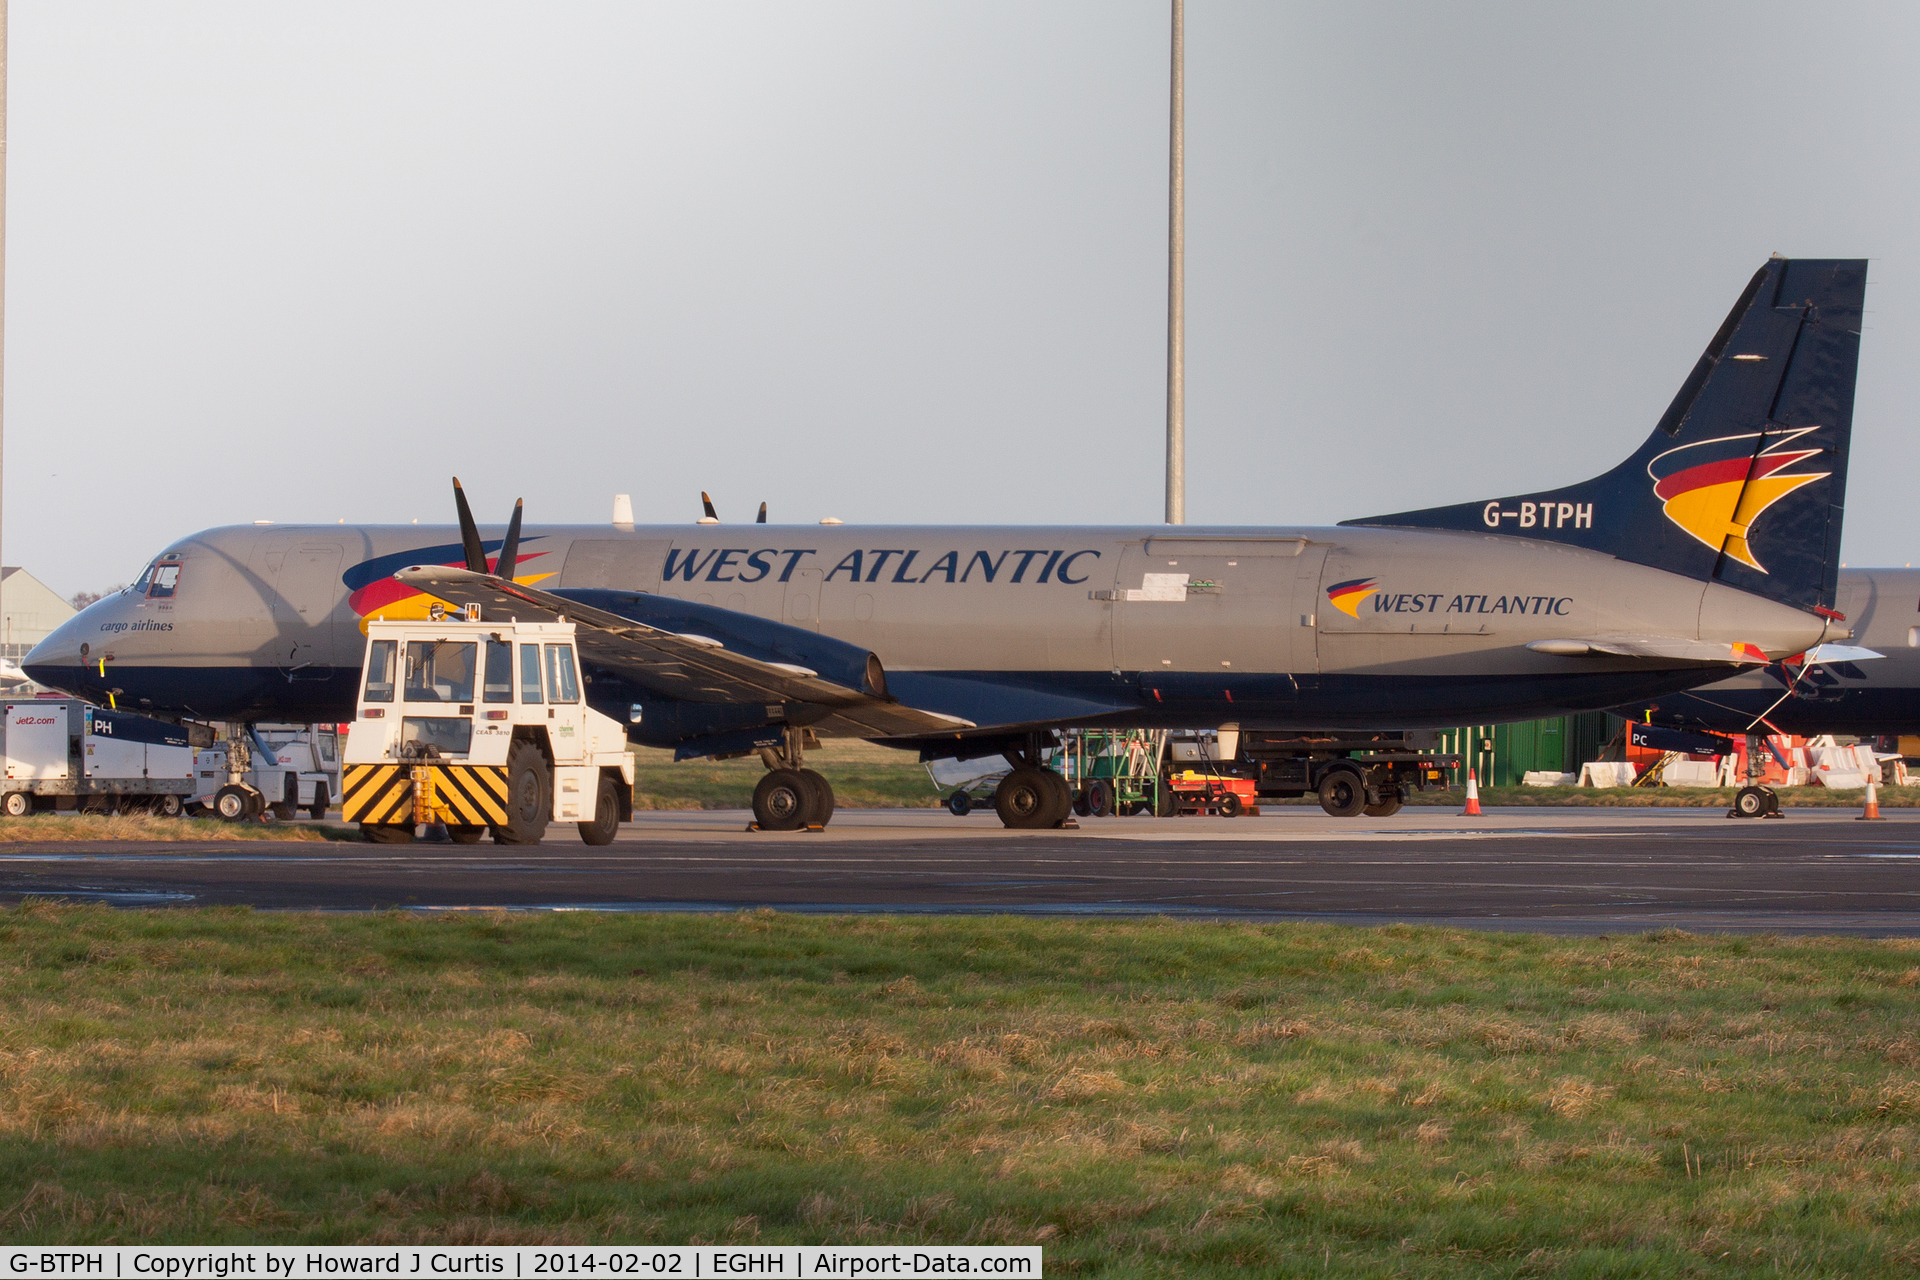 G-BTPH, 1989 British Aerospace ATP(F) C/N 2015, West Atlantic Airlines.